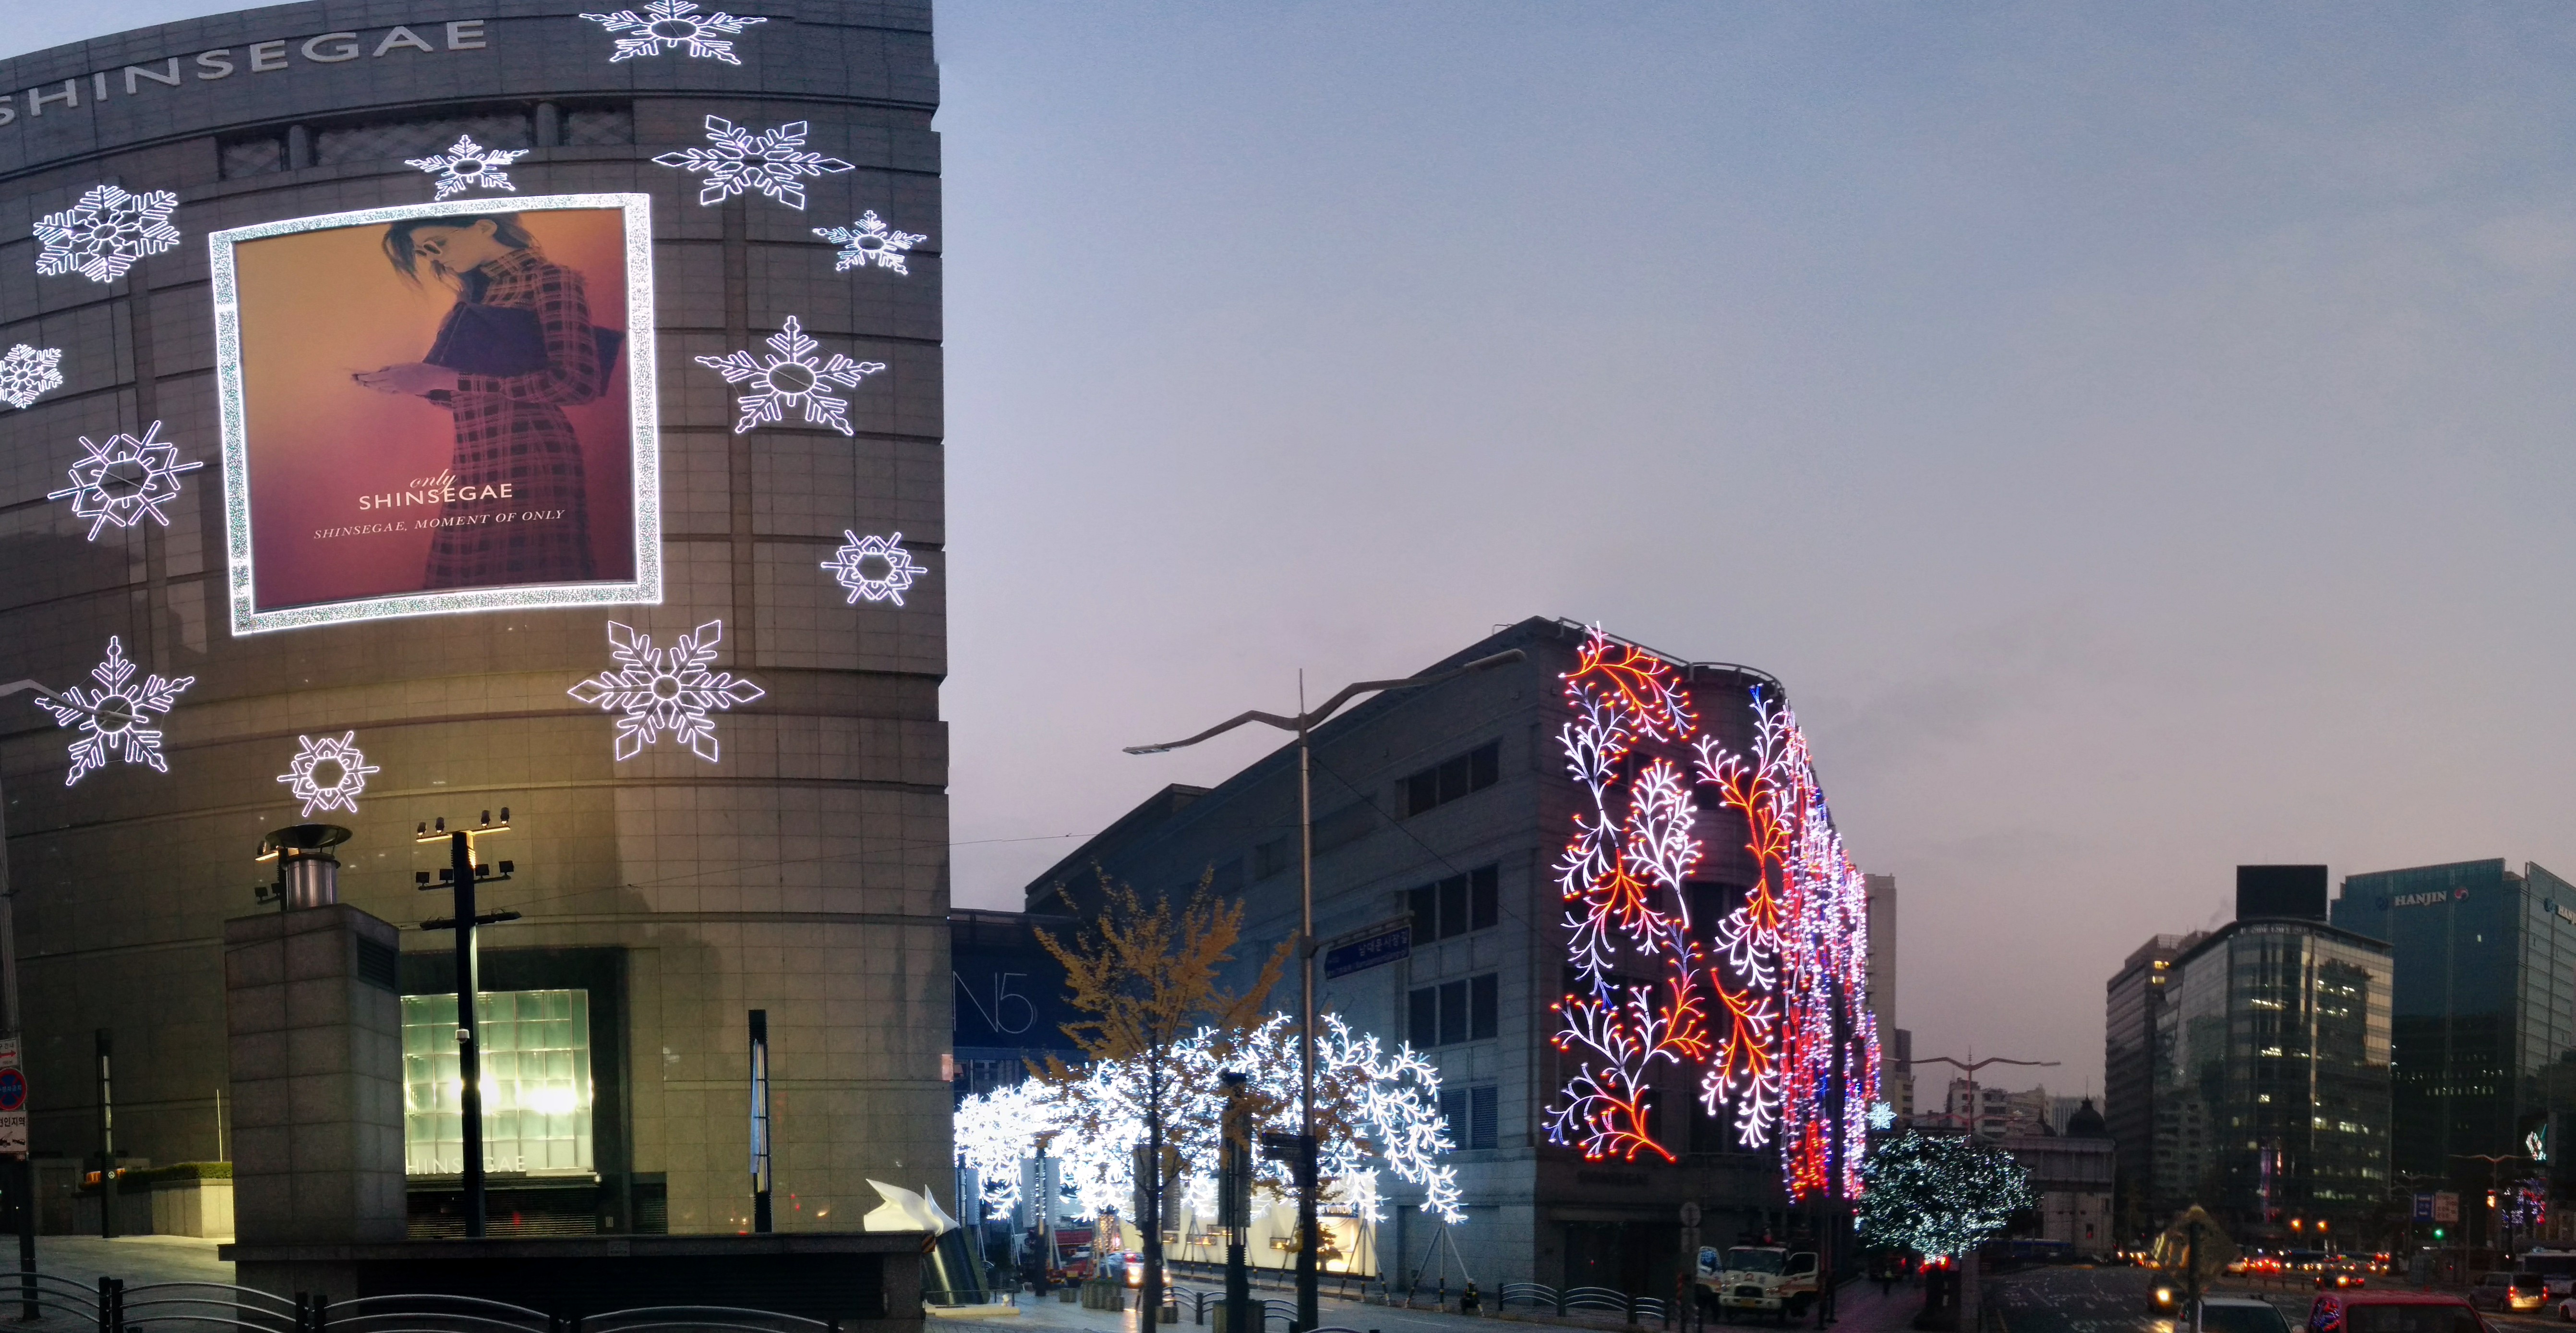 PANO_20151110_065347.jpg 네온사인 밝힌 서울 신세계백화점